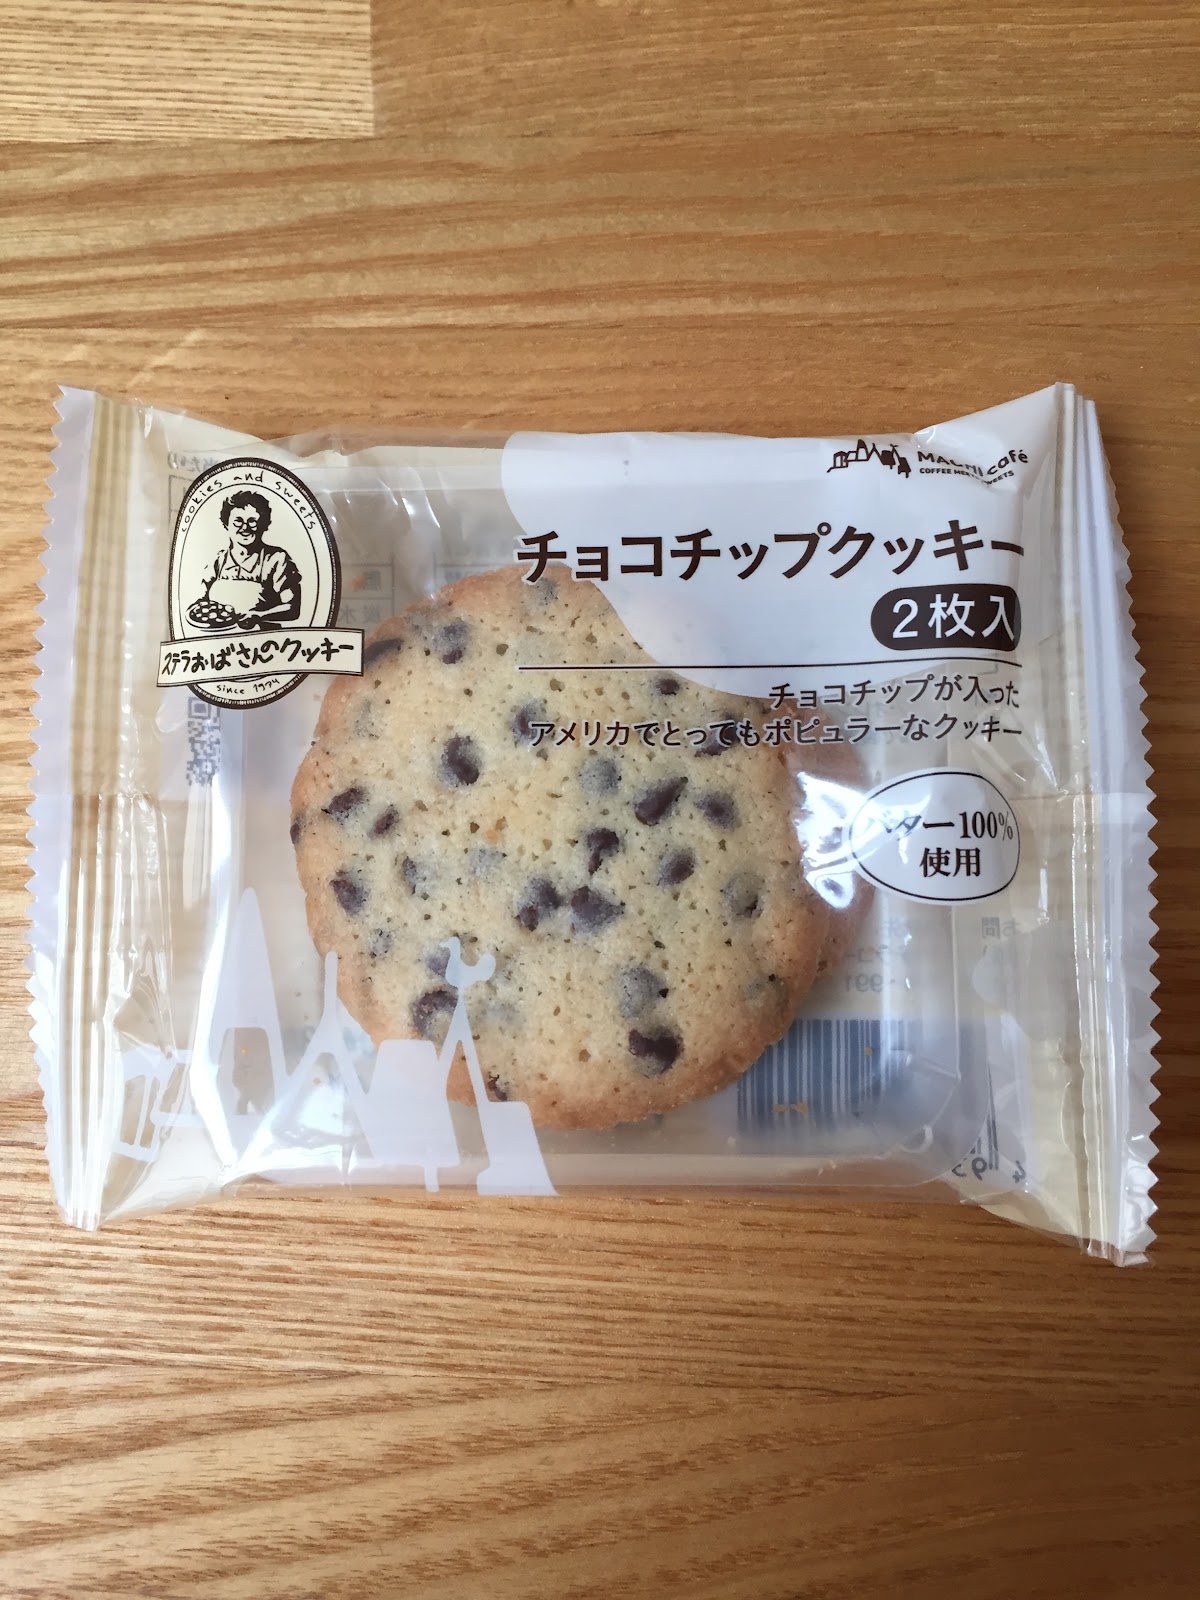 コンビニスイーツを食べて個人的な感想を言うブログ ローソンのチョコチップクッキー